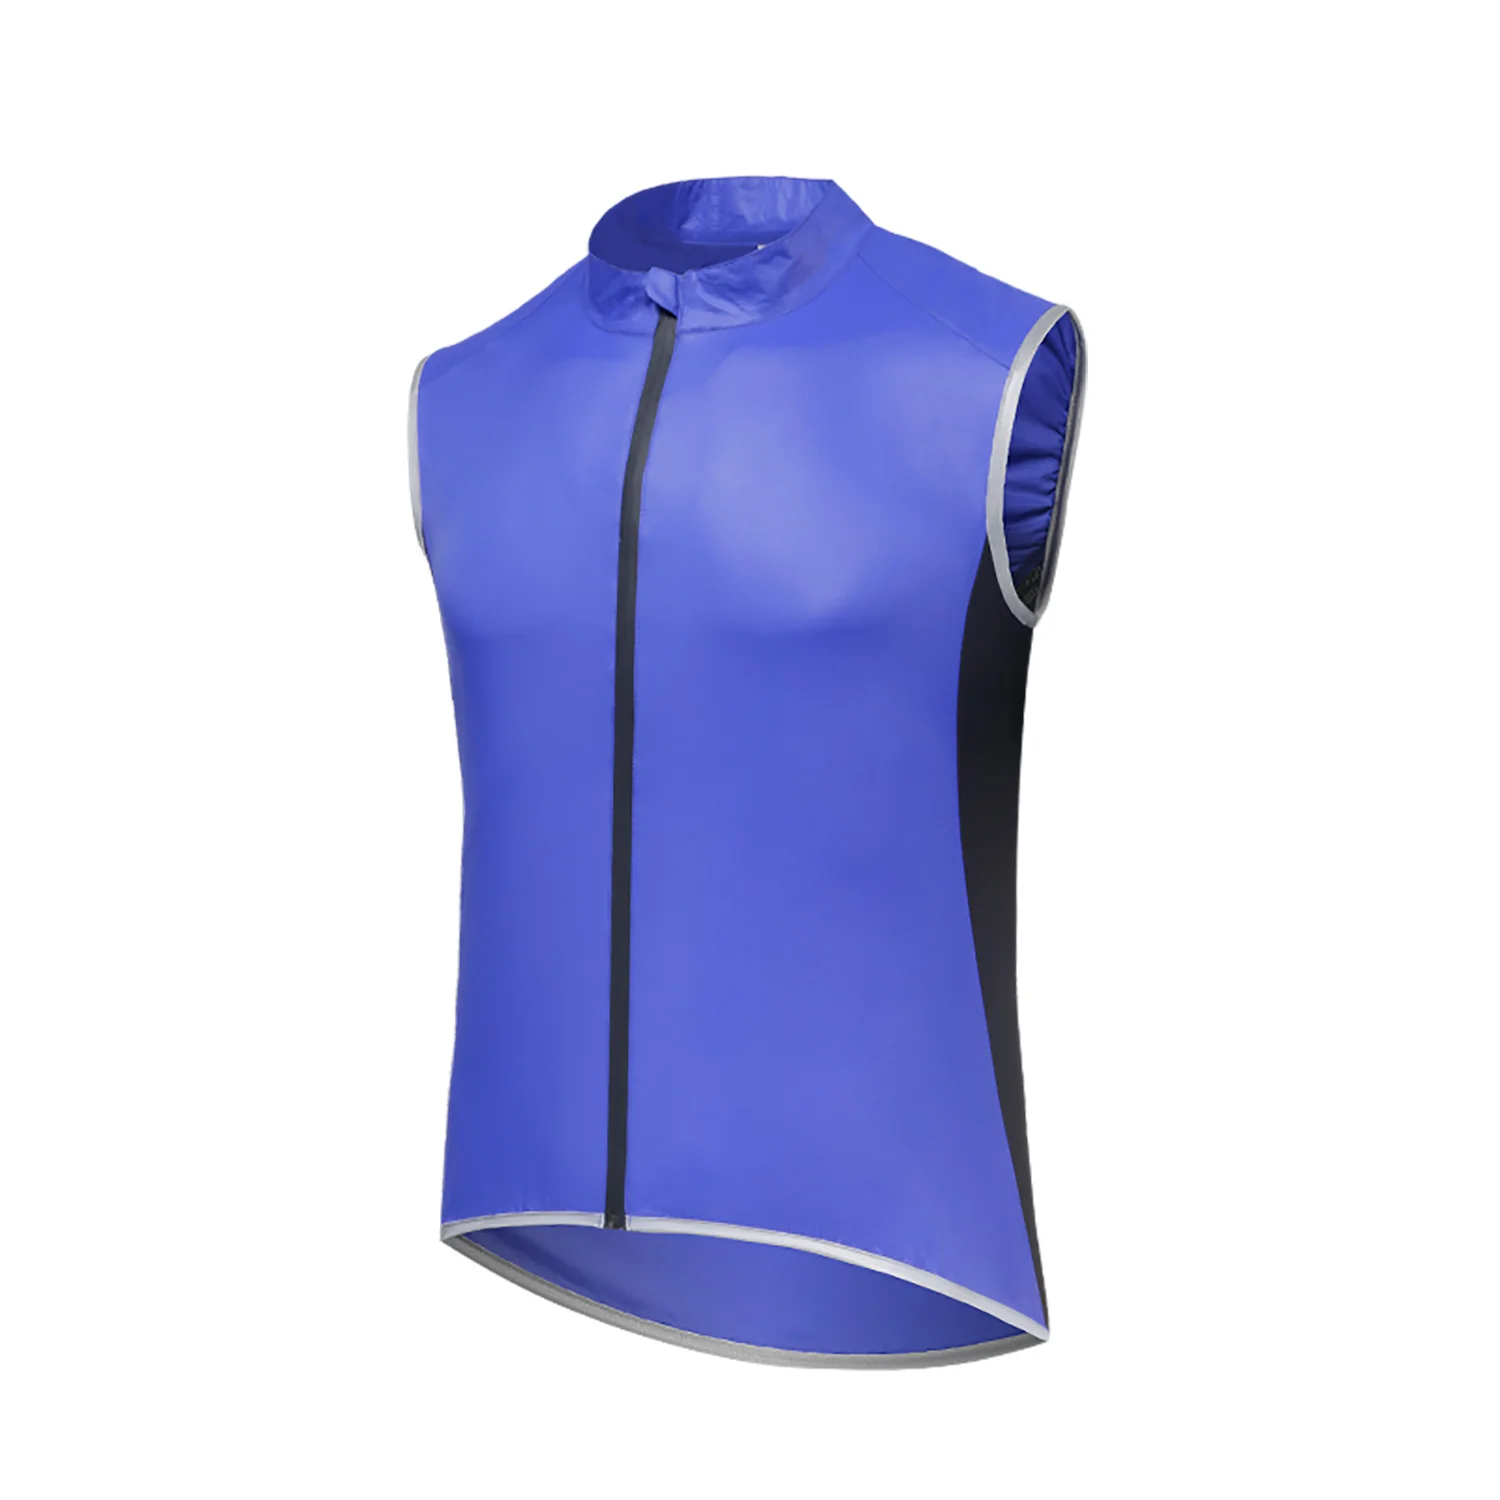  windbreaker windproof waterproof breathable light weight bike riding jacket vest women thumb200